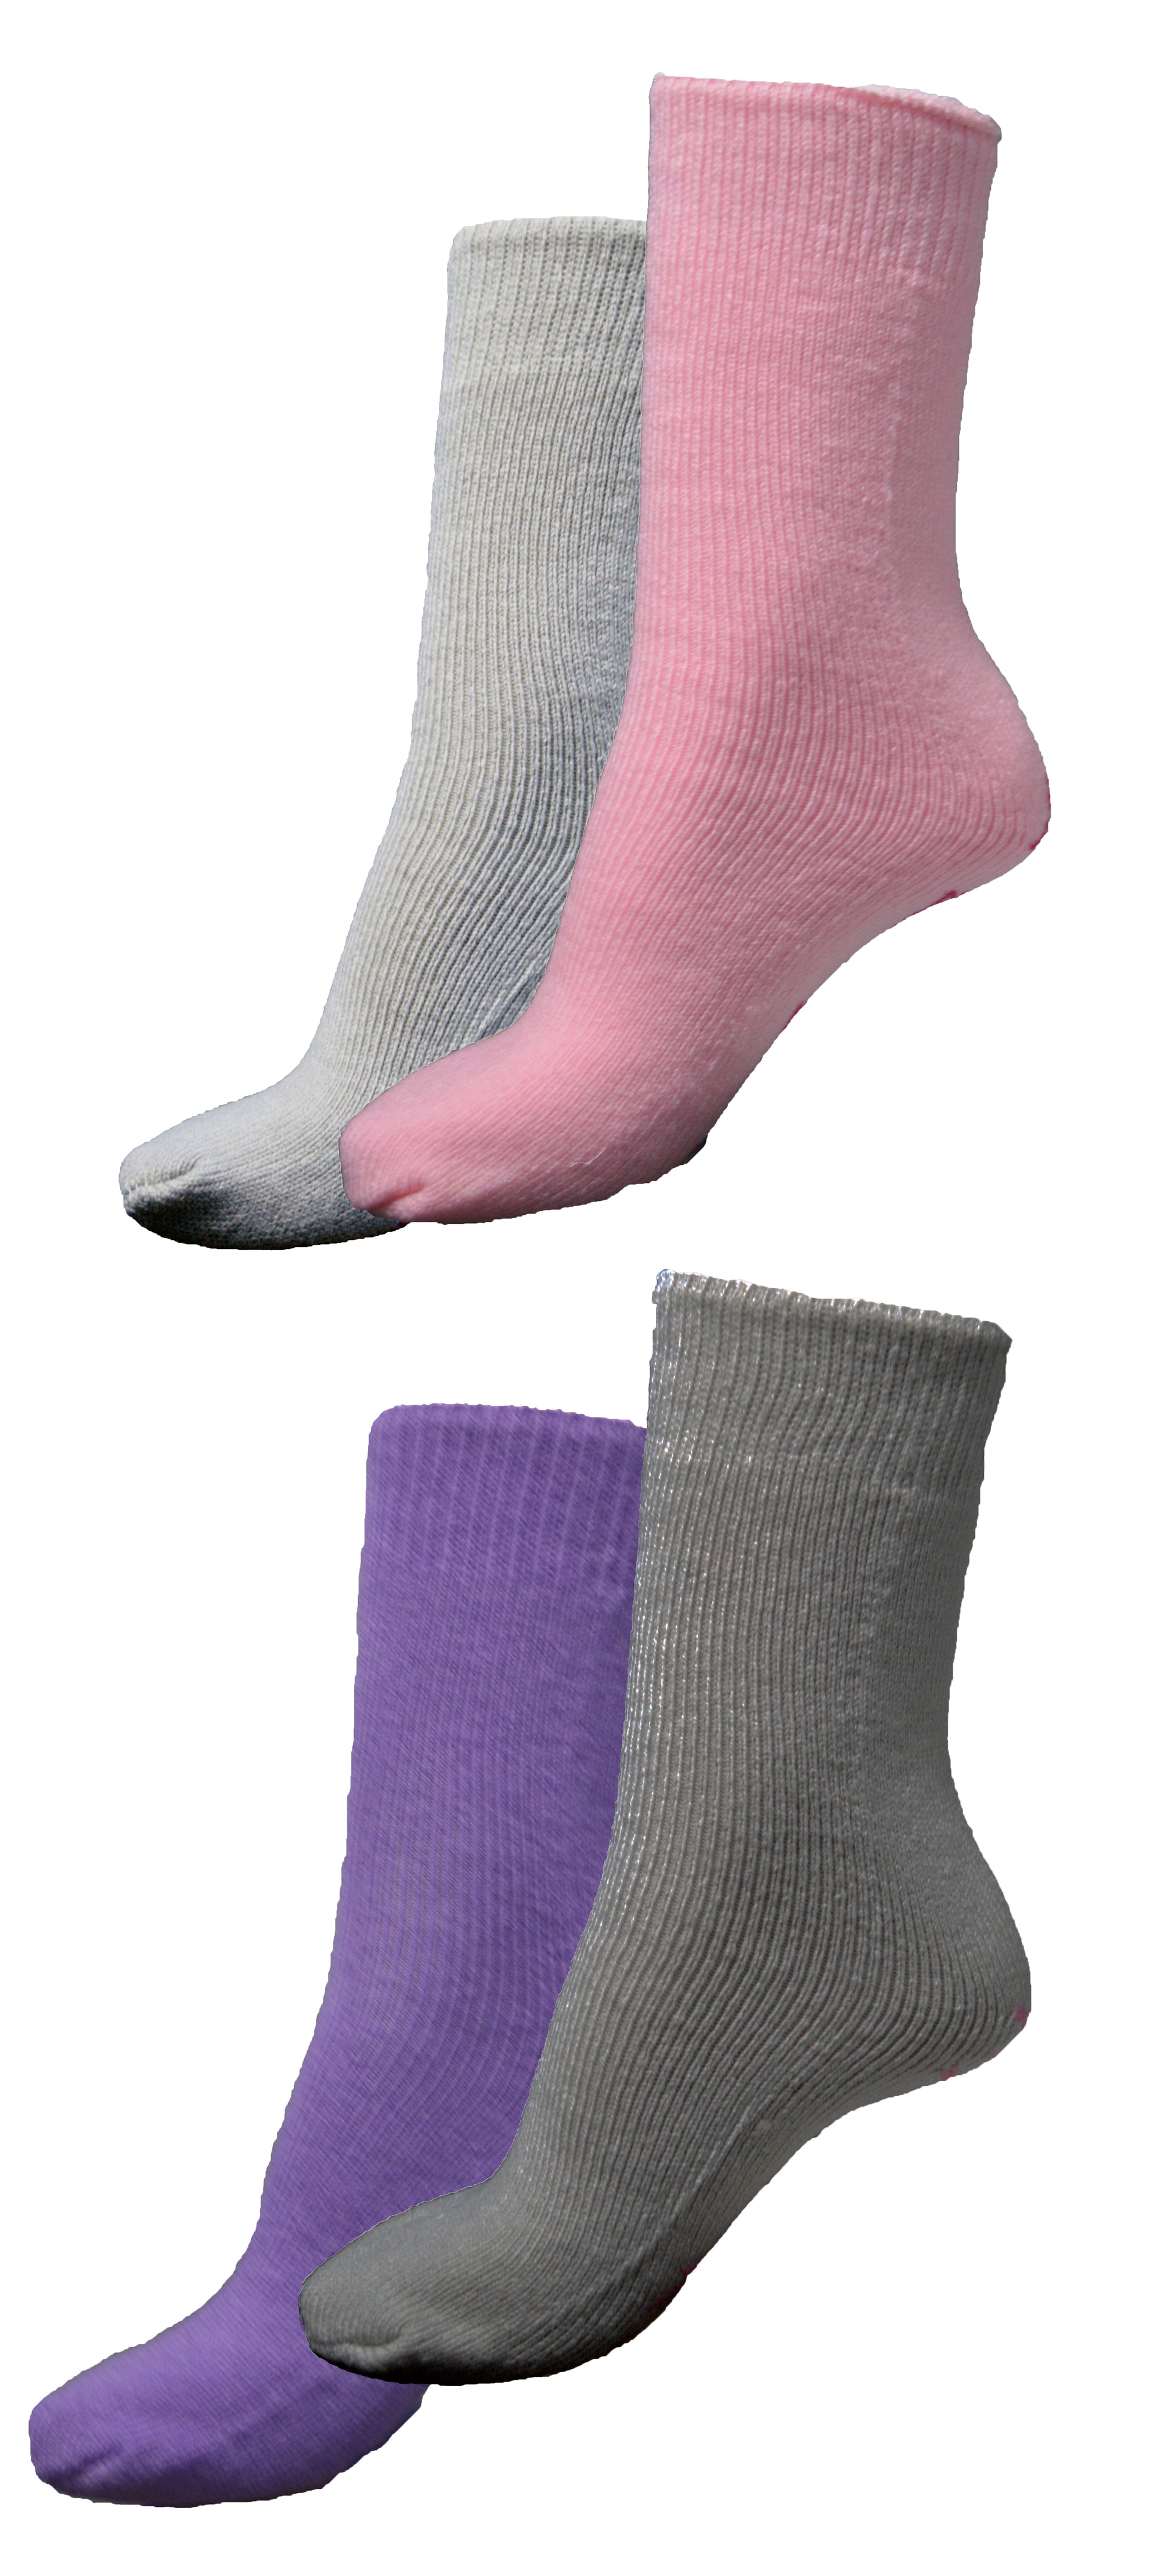 1 Mens Thermal Non-Slip Grip Slipper Lounge Socks UK 6-11 